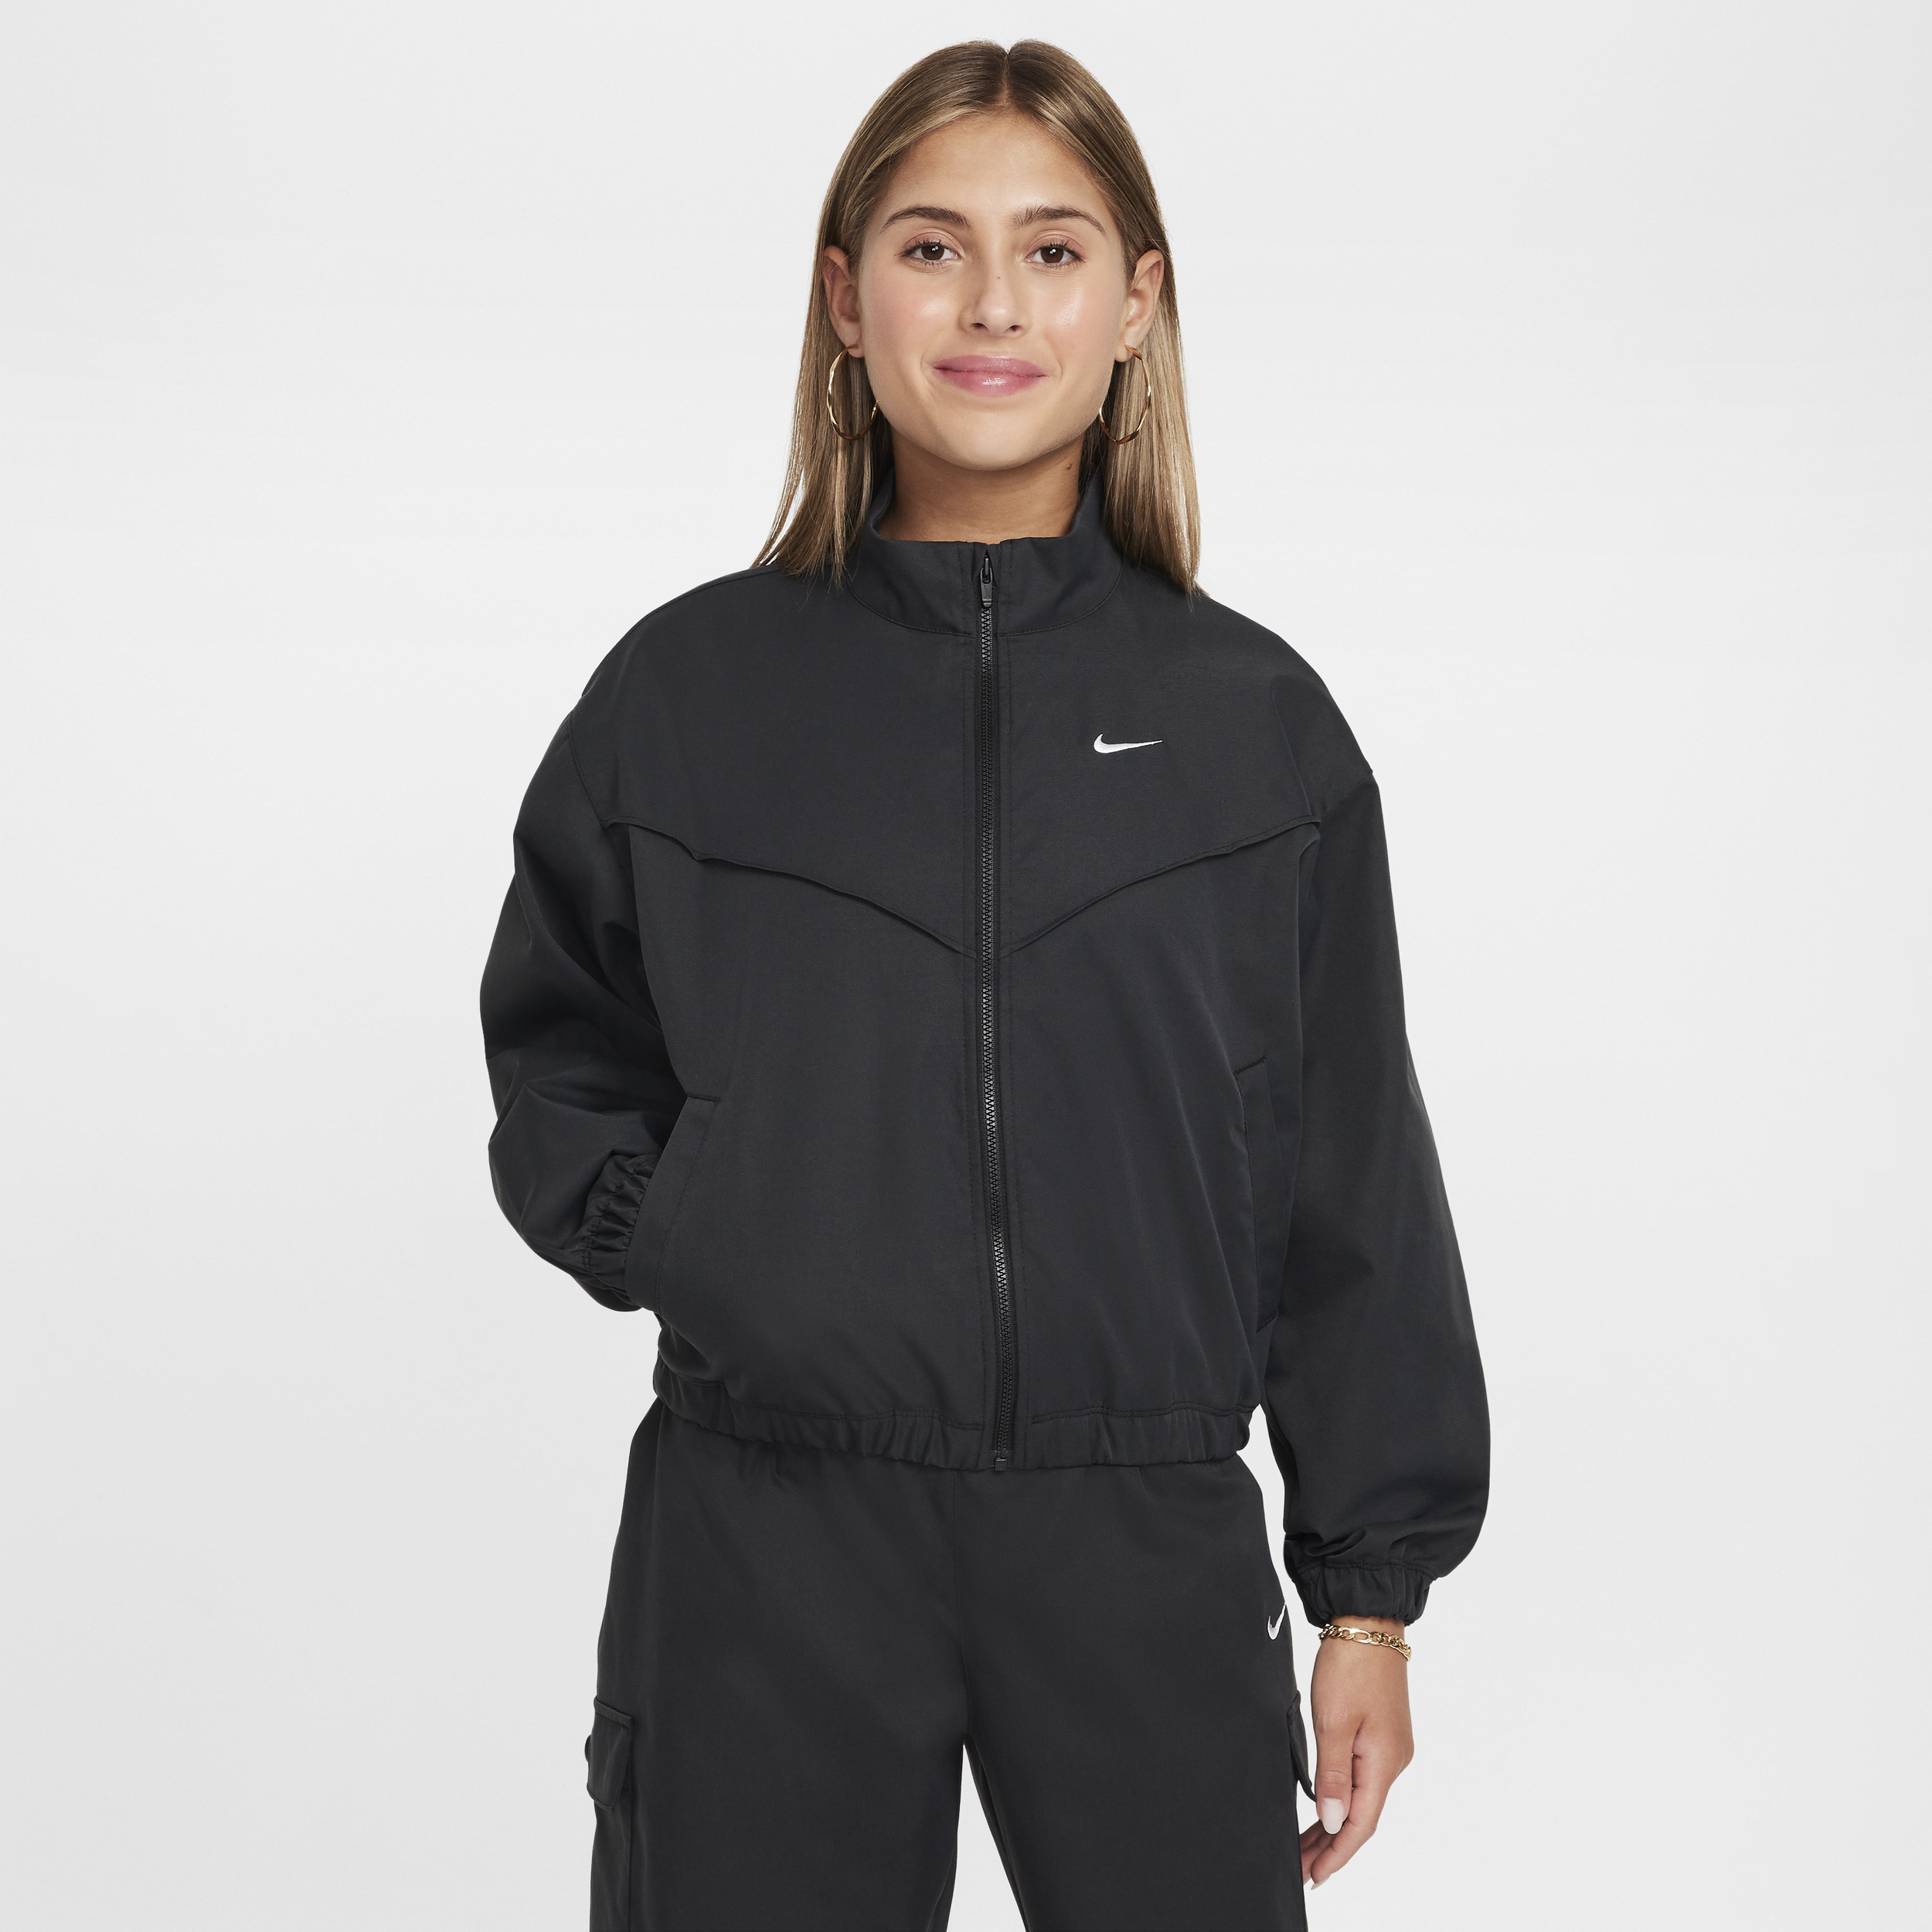 Nike Sportswear licht, oversized jack voor meisjes - Zwart